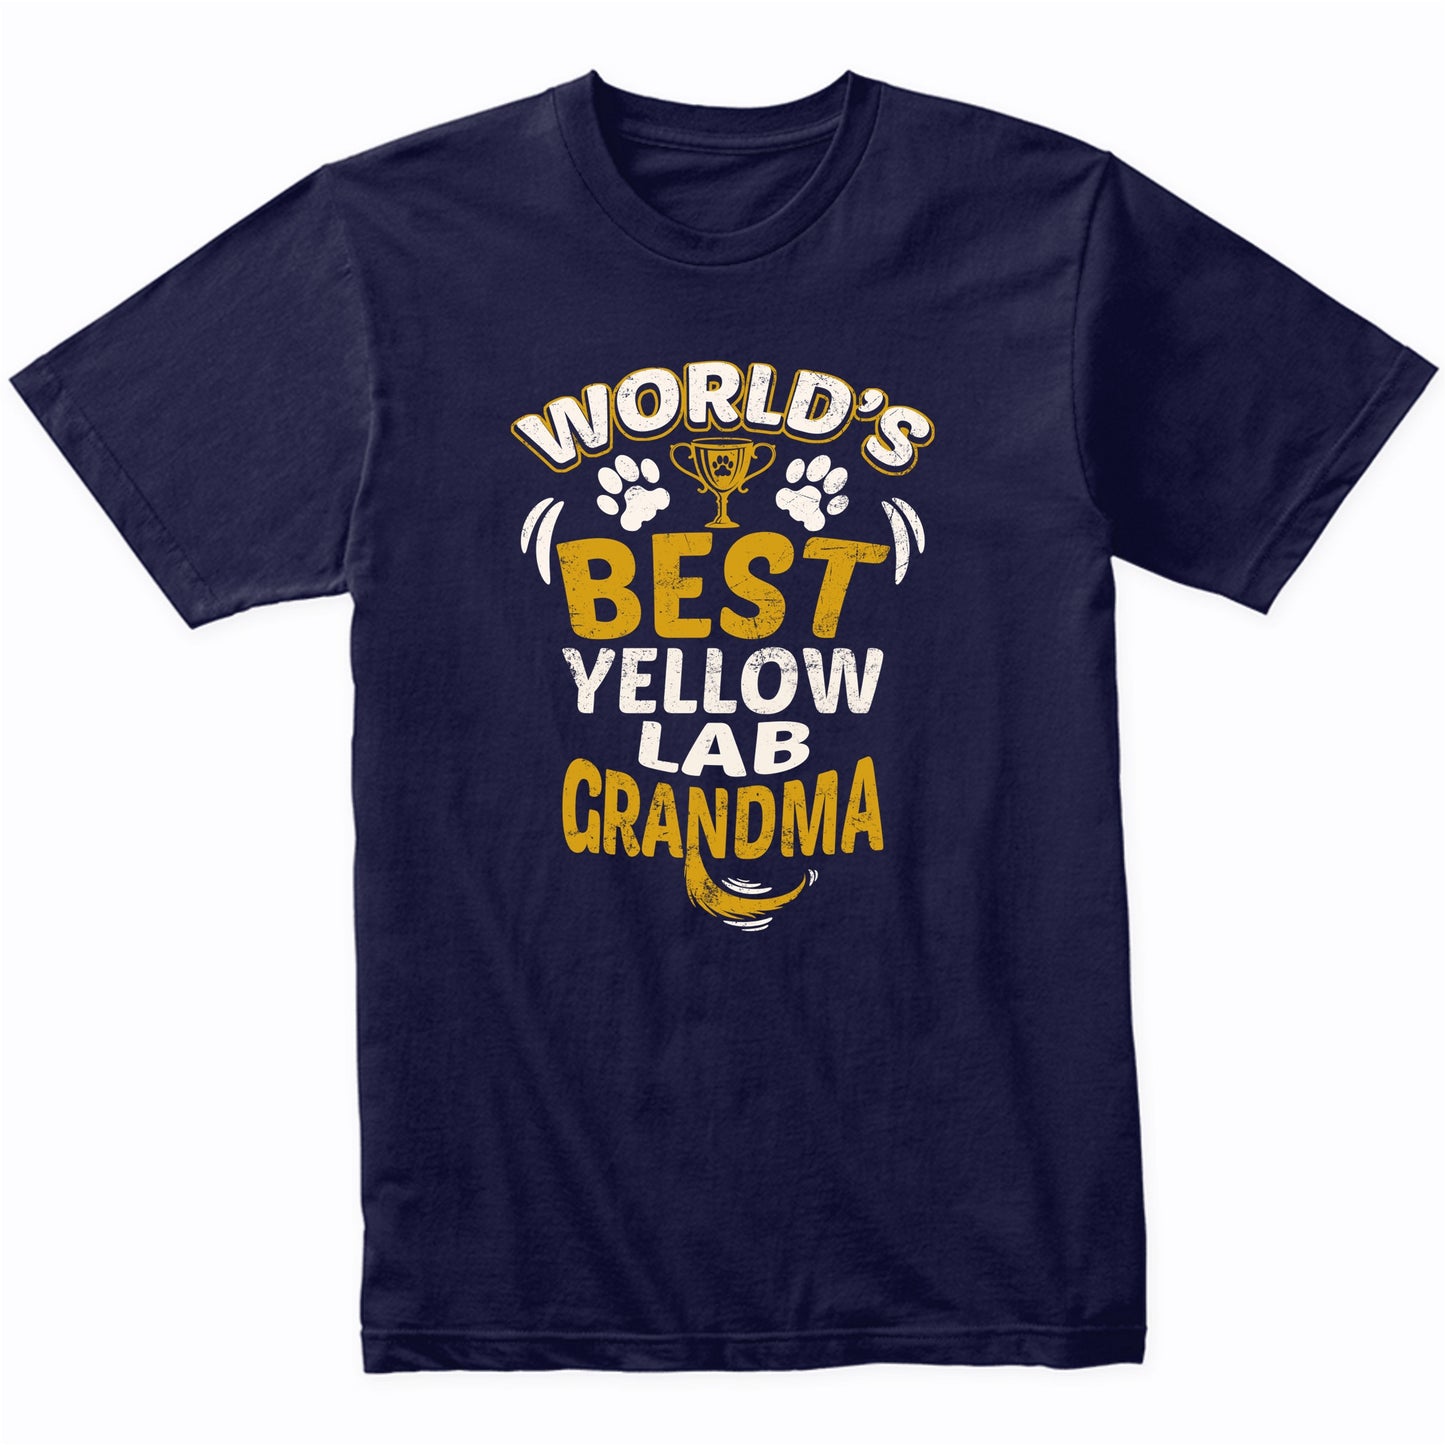 World's Best Yellow Lab Grandma Graphic T-Shirt